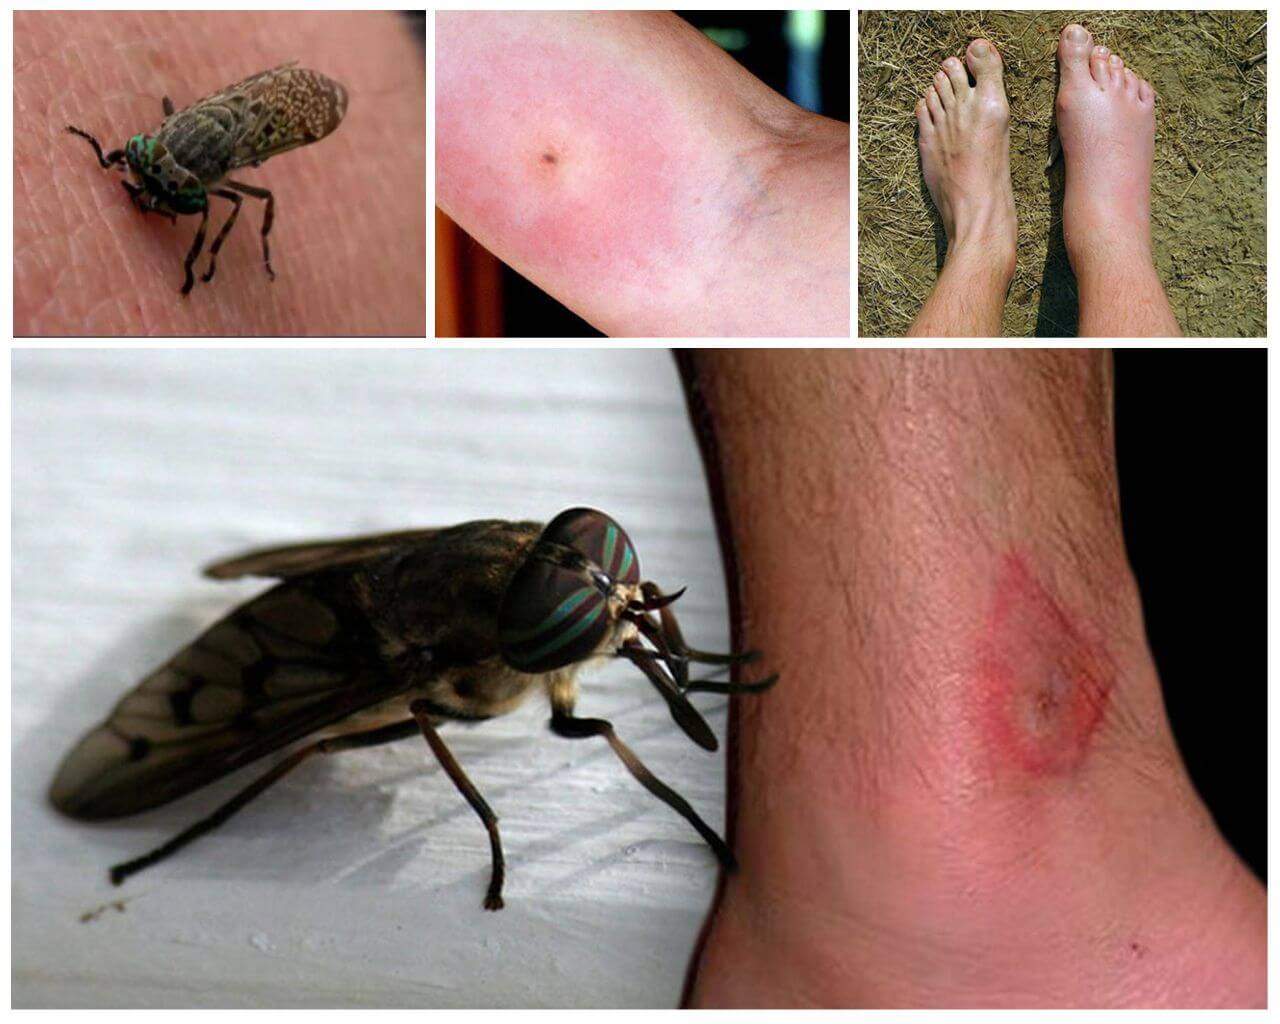 แมลงกัดต่อร่างกายมนุษย์